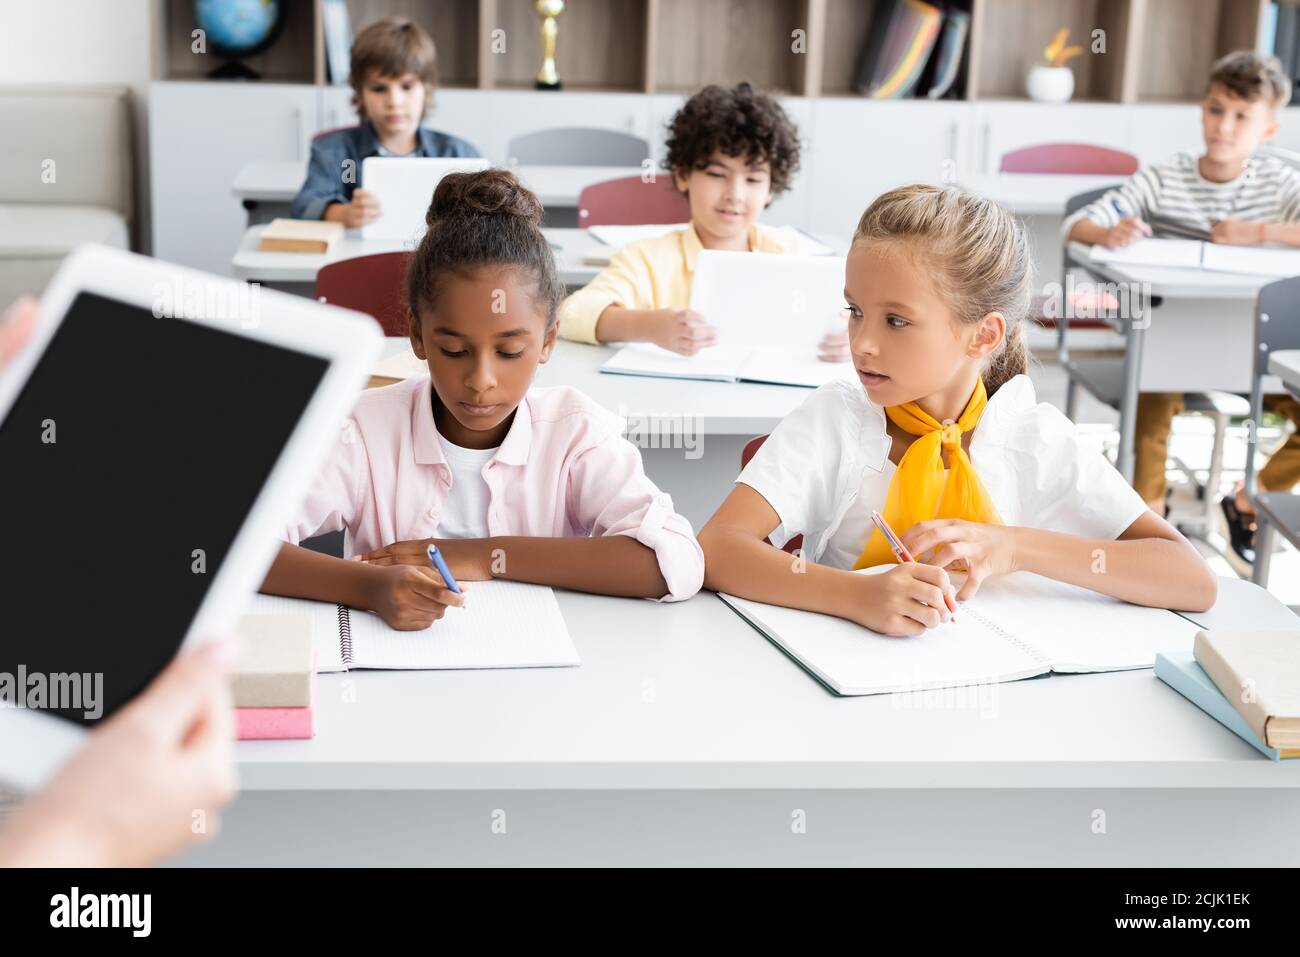 Beschnittene Ansicht des Lehrers mit digitalem Tablet mit leerem Bildschirm In der Nähe multikulturelle Schüler schreiben in Notebooks Stockfoto